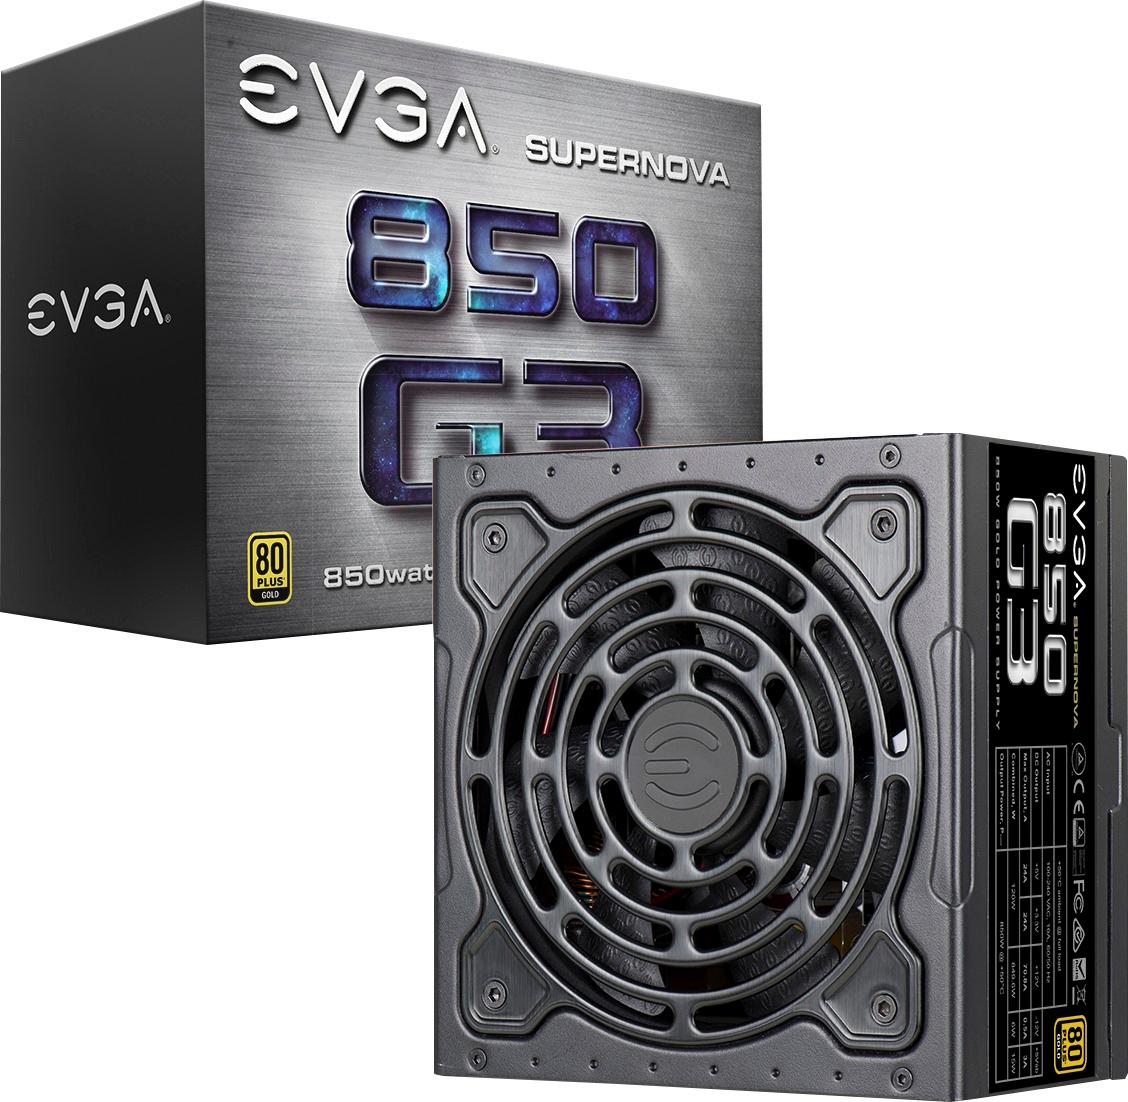 Best Buy: EVGA 850W ATX12V / EPS12V Modular Power Supply Black 220 